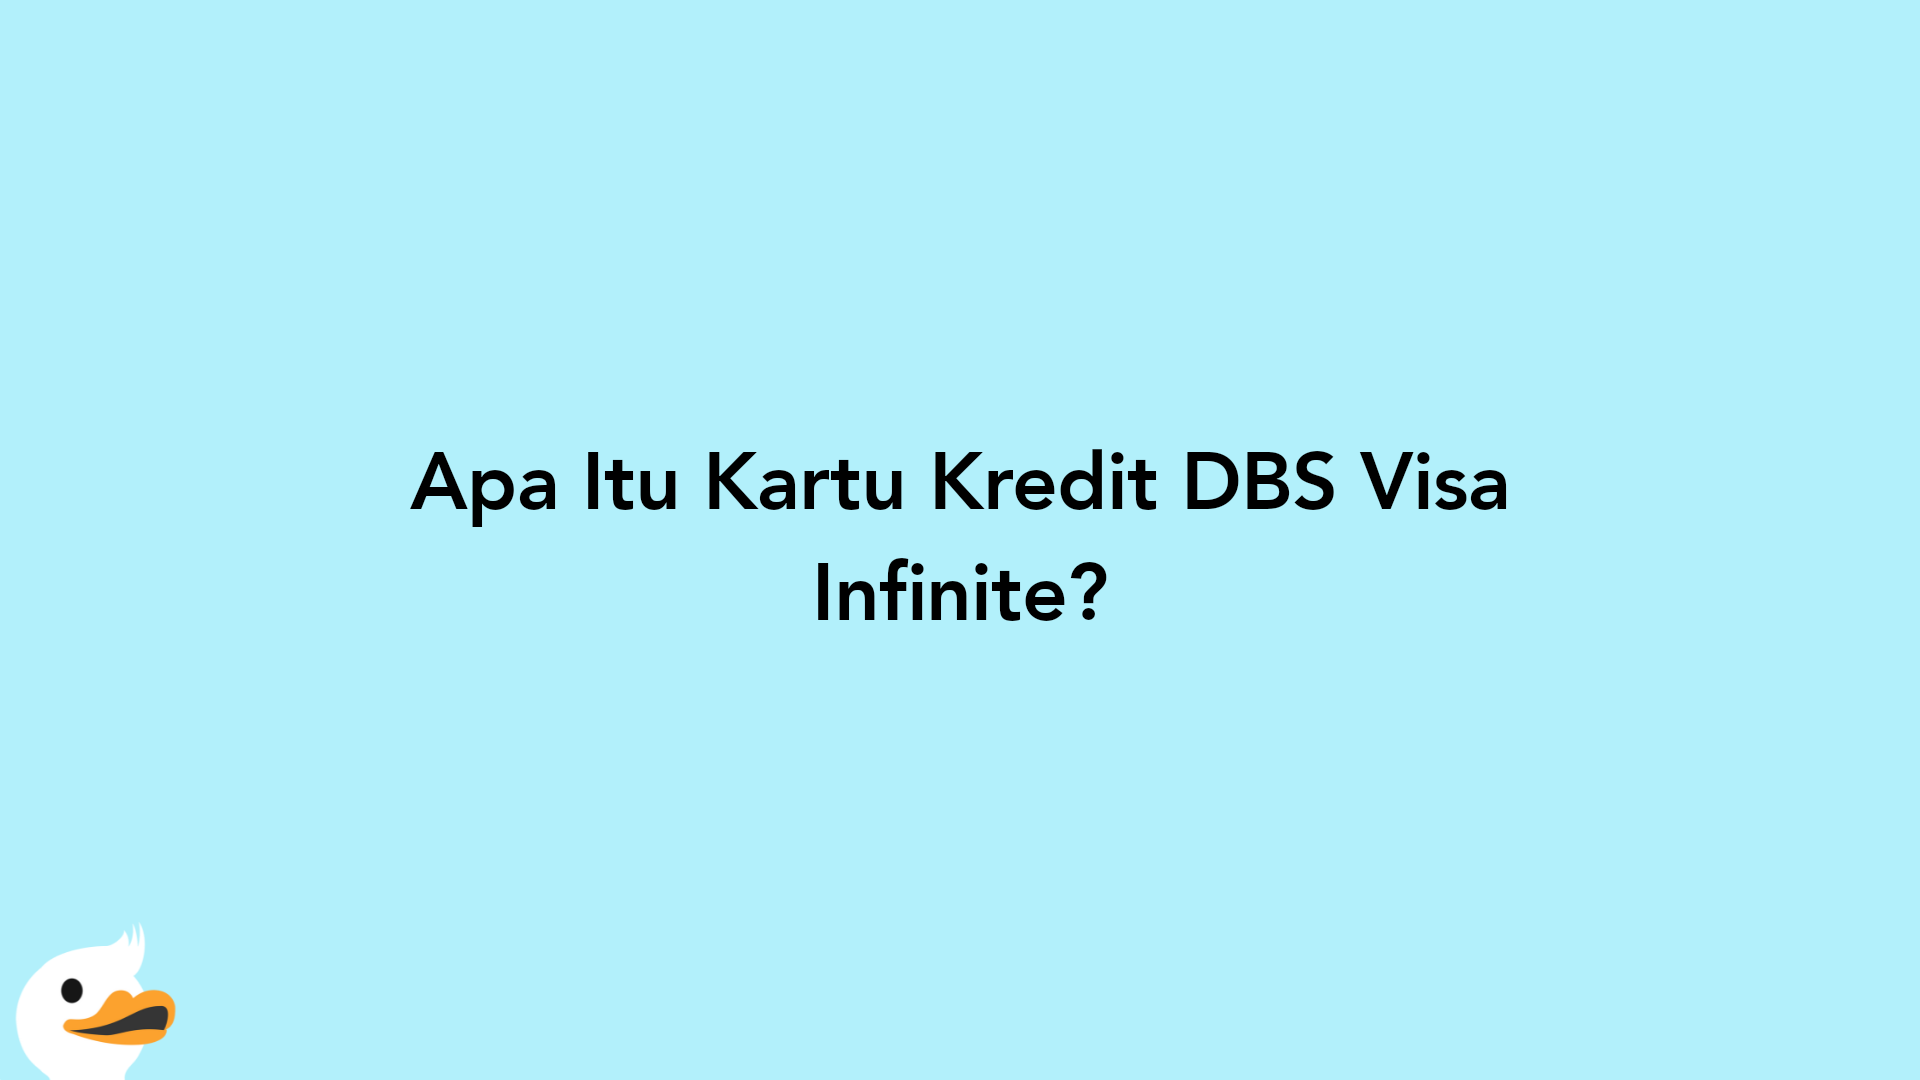 Apa Itu Kartu Kredit DBS Visa Infinite?